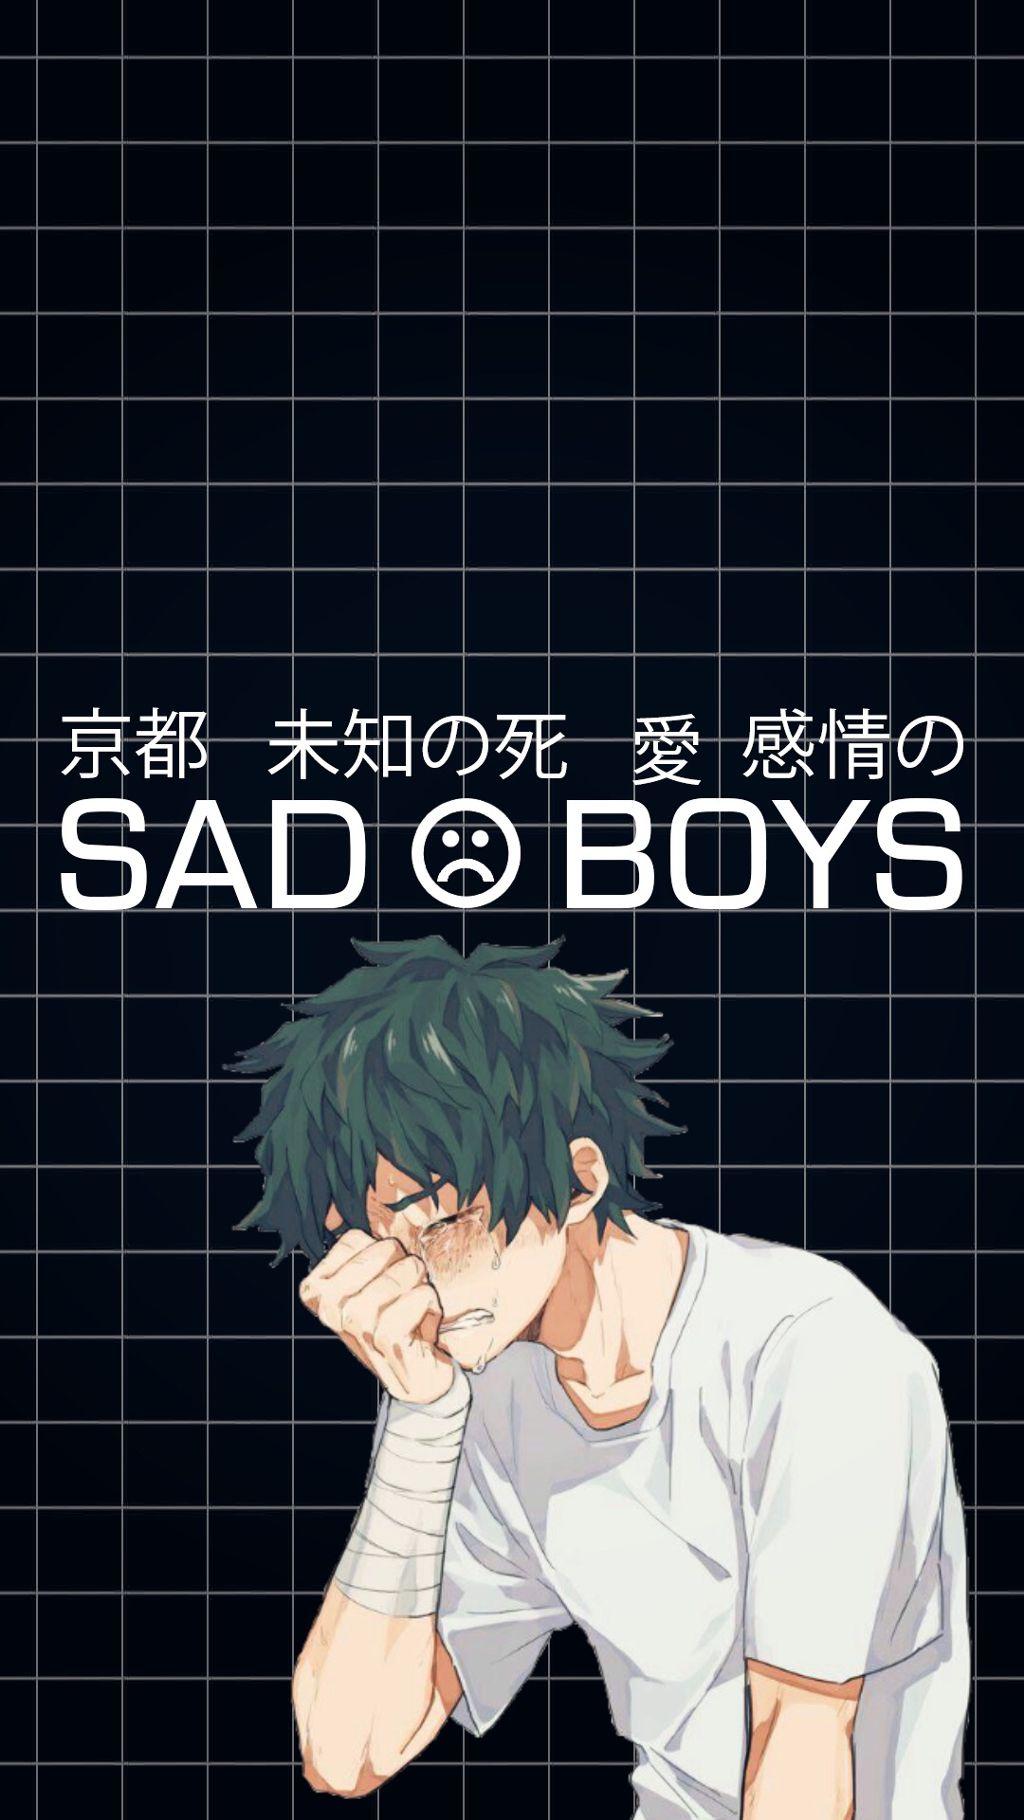 Sad Boys Anime Supreme Wallpapers Wallpaper Cave